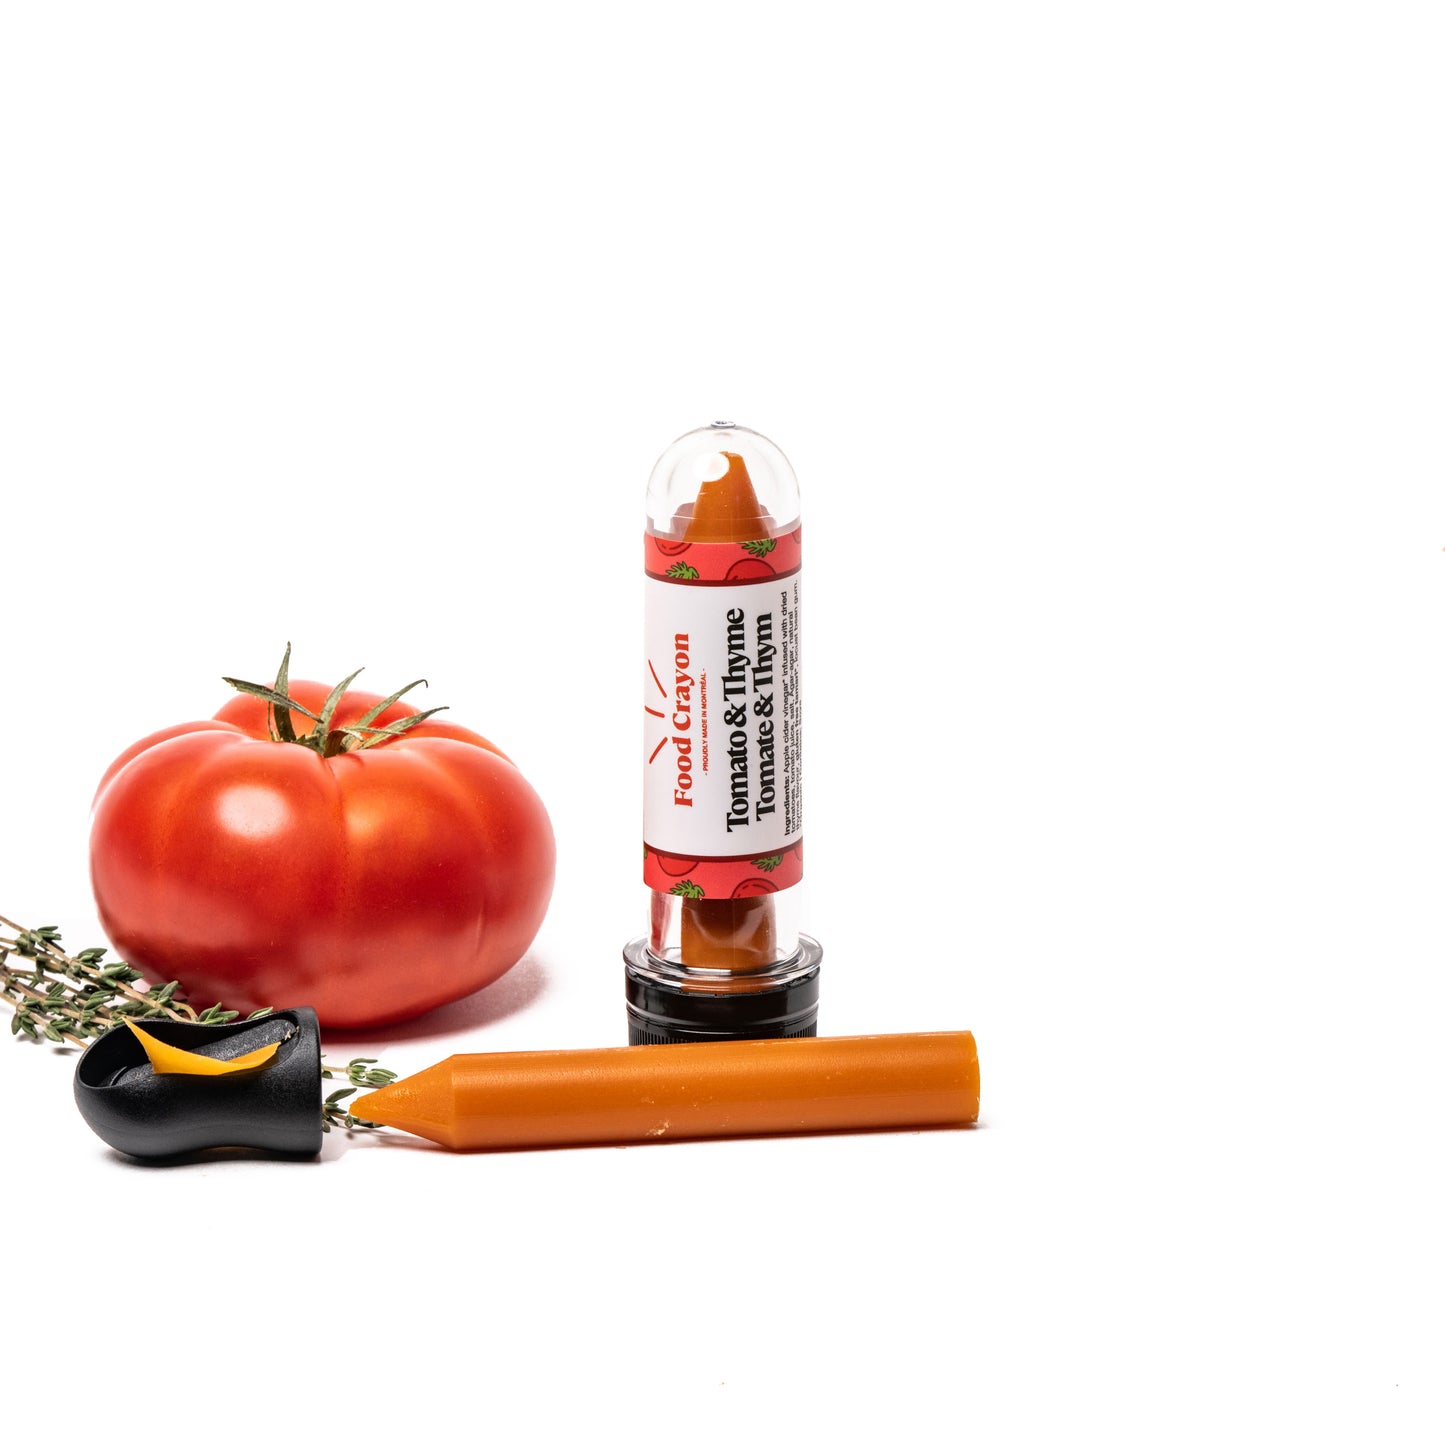 Tomato & Thyme